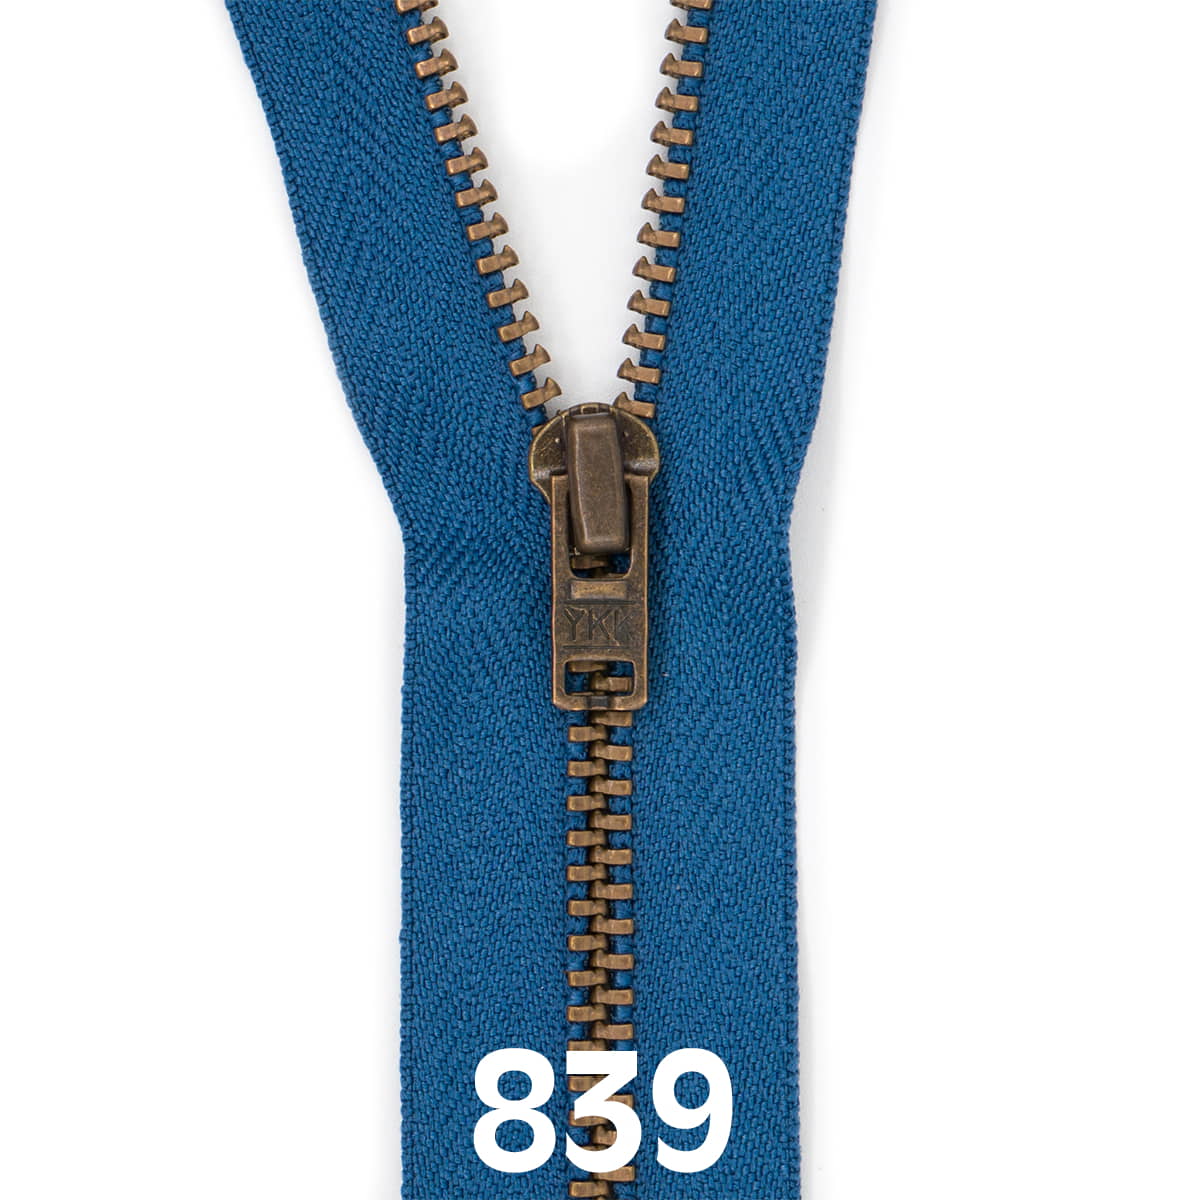 Broek rits metaal | brons fijn | 12 cm | YKK | 839 jeans blauw Rits RITS-BROEK-BRONZE-4.5-12CM-839-JEAN-BLUE - Fourniturenkraam.nl